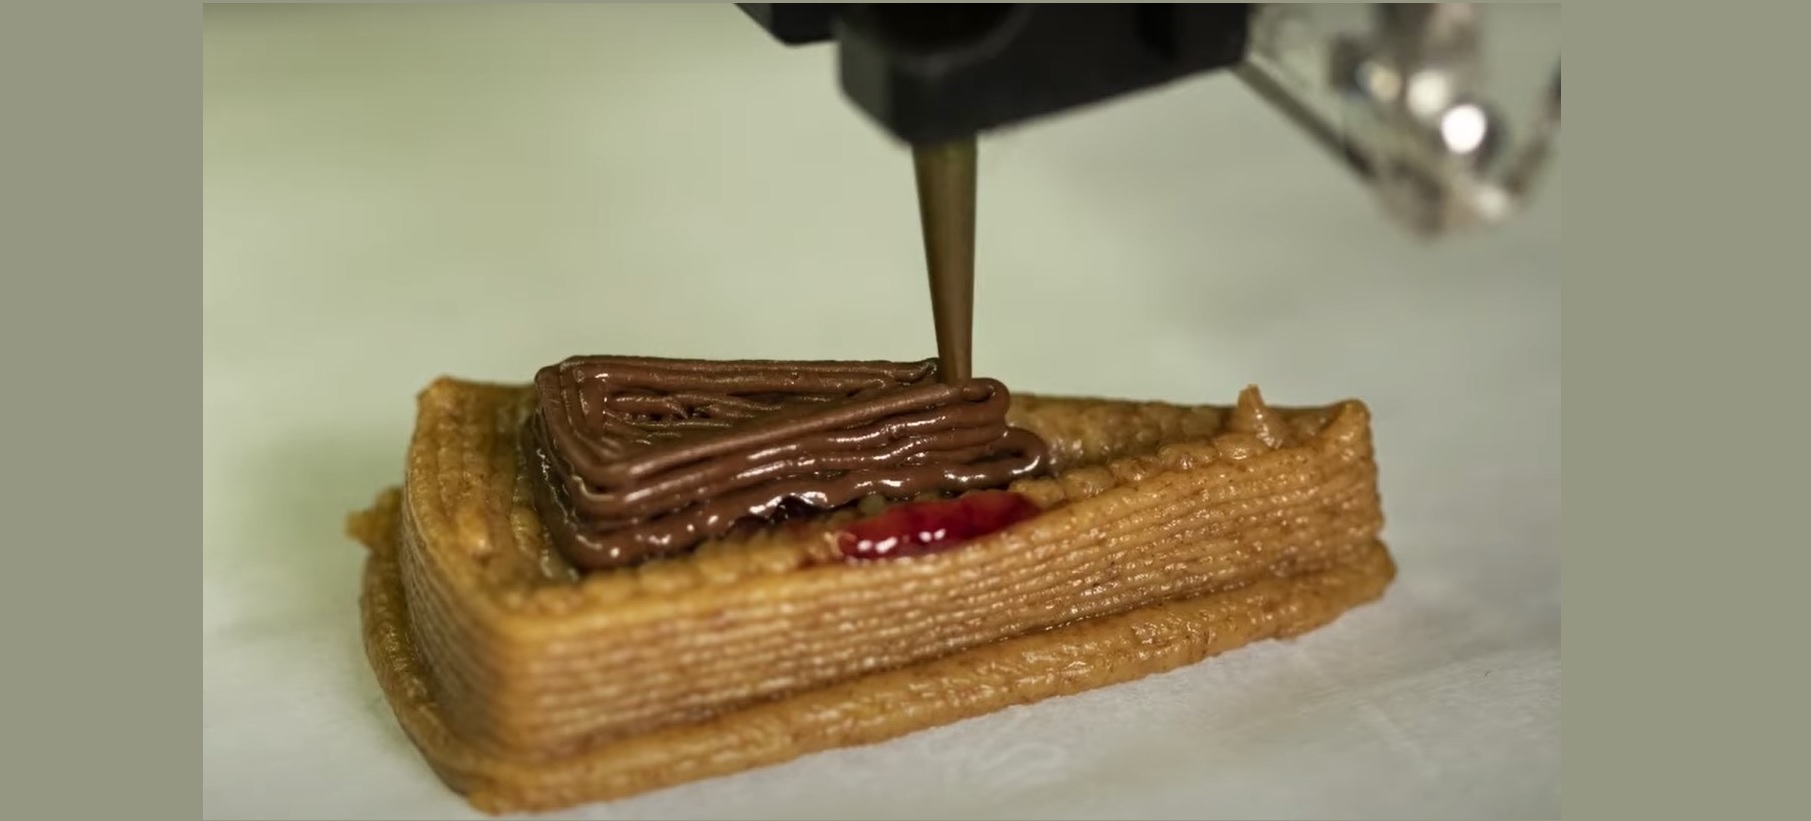 Посмотрите, как робот печатает на 3D-принтере чизкейки